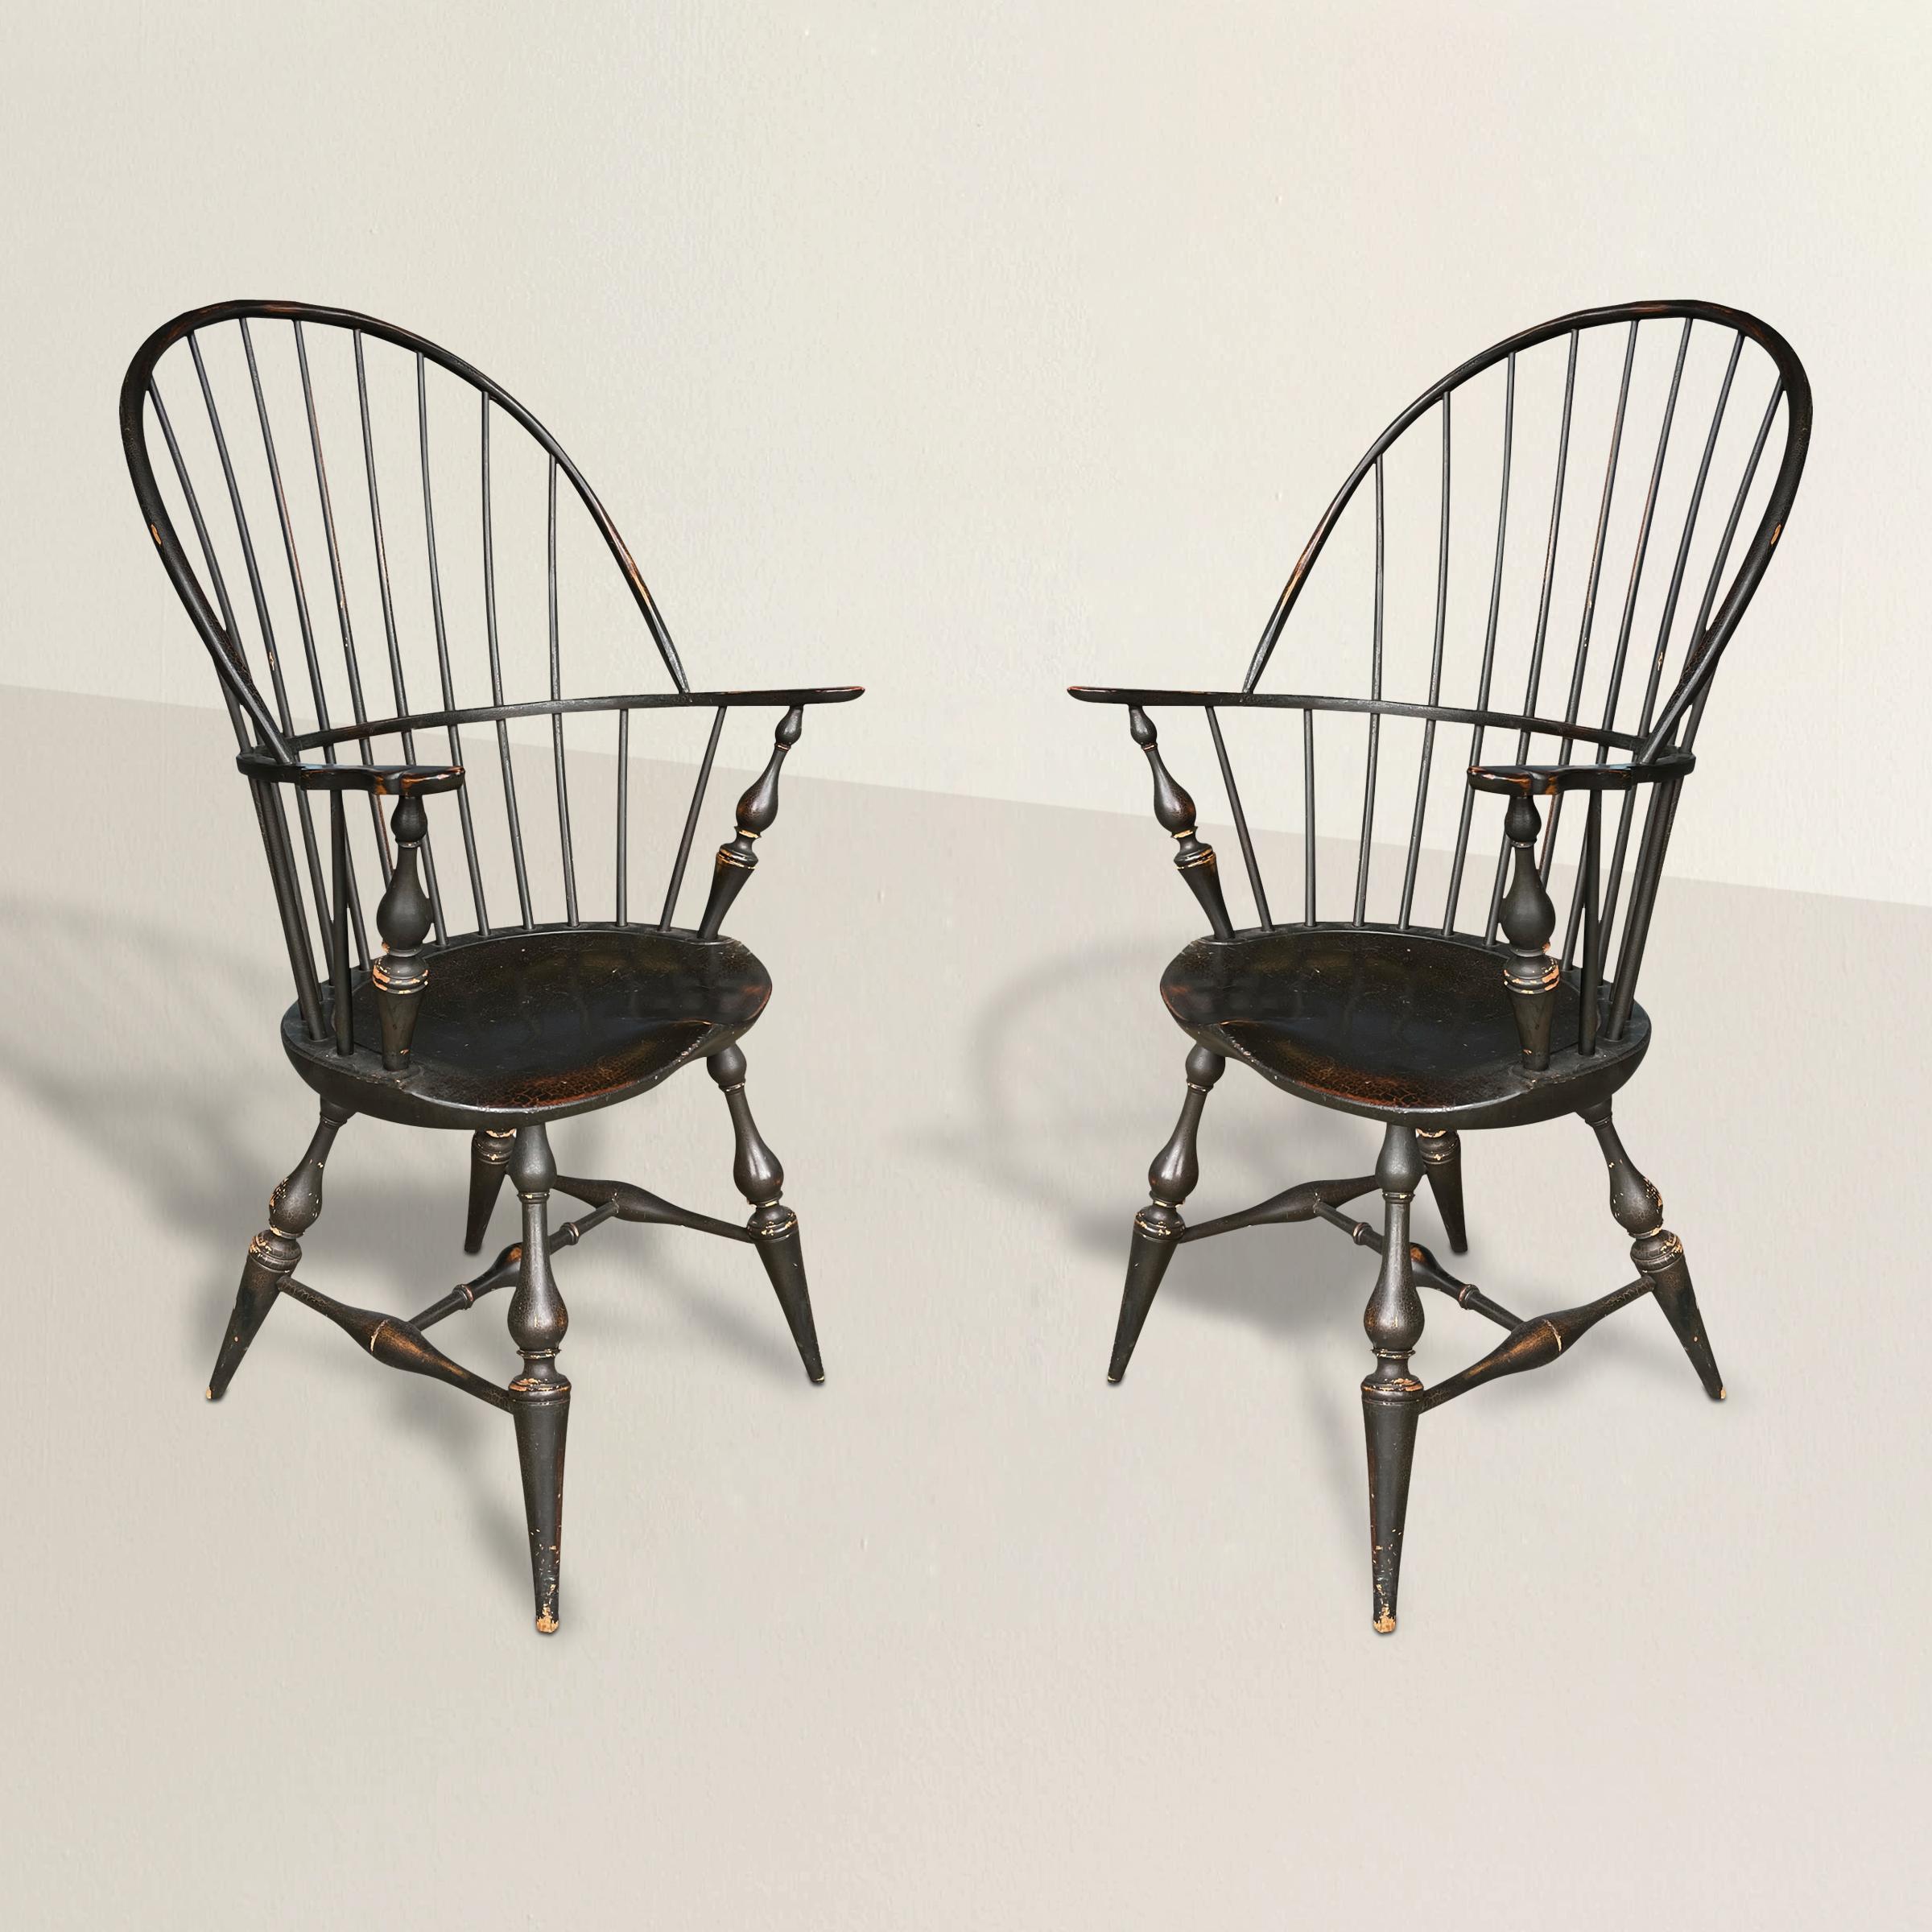 Ein Paar amerikanischer Windsor-Stühle aus dem 20. Jahrhundert mit durchgehender Rückenlehne, Sattelsitzen, gedrechselten Beinen, die sich zu schmalen Füßen verjüngen, und den originalen schwarz lackierten Oberflächen. Perfekt am Esstisch oder am